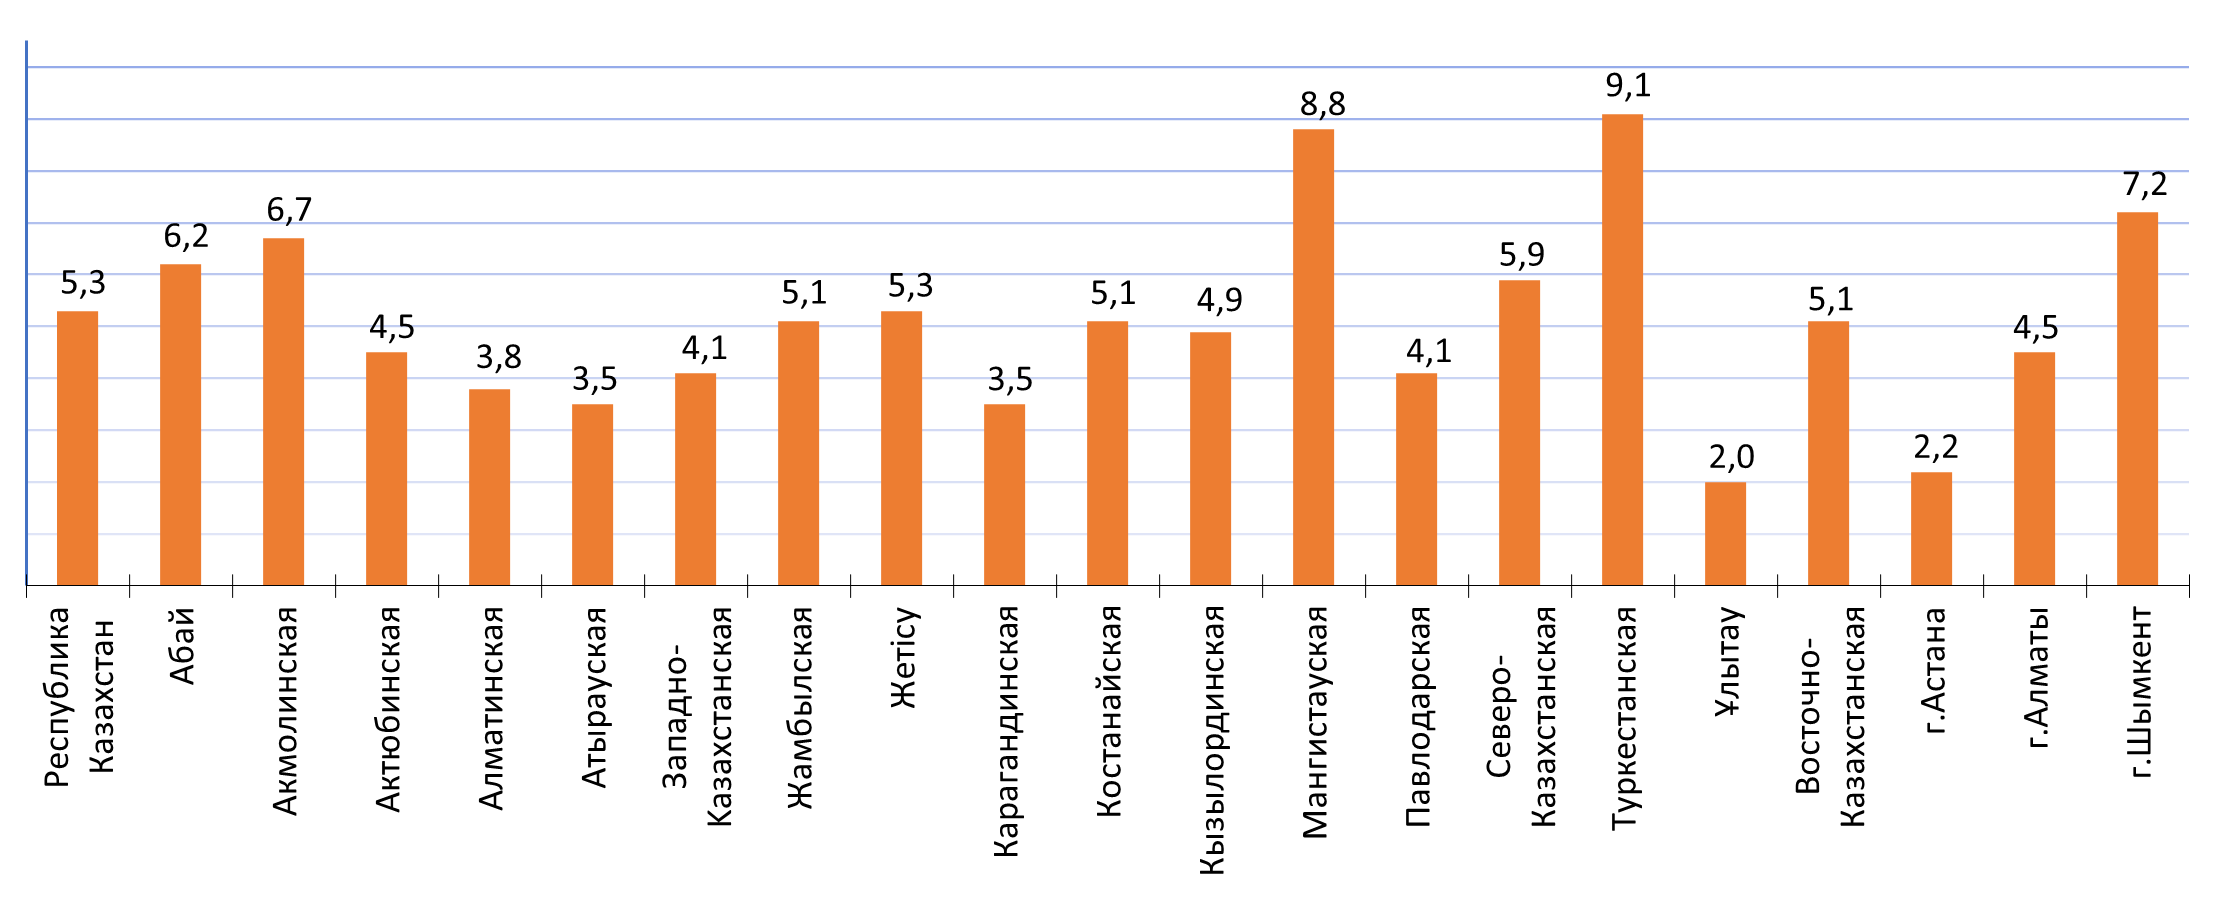 Основные показатели дифференциации доходов населения Республики Казахстан